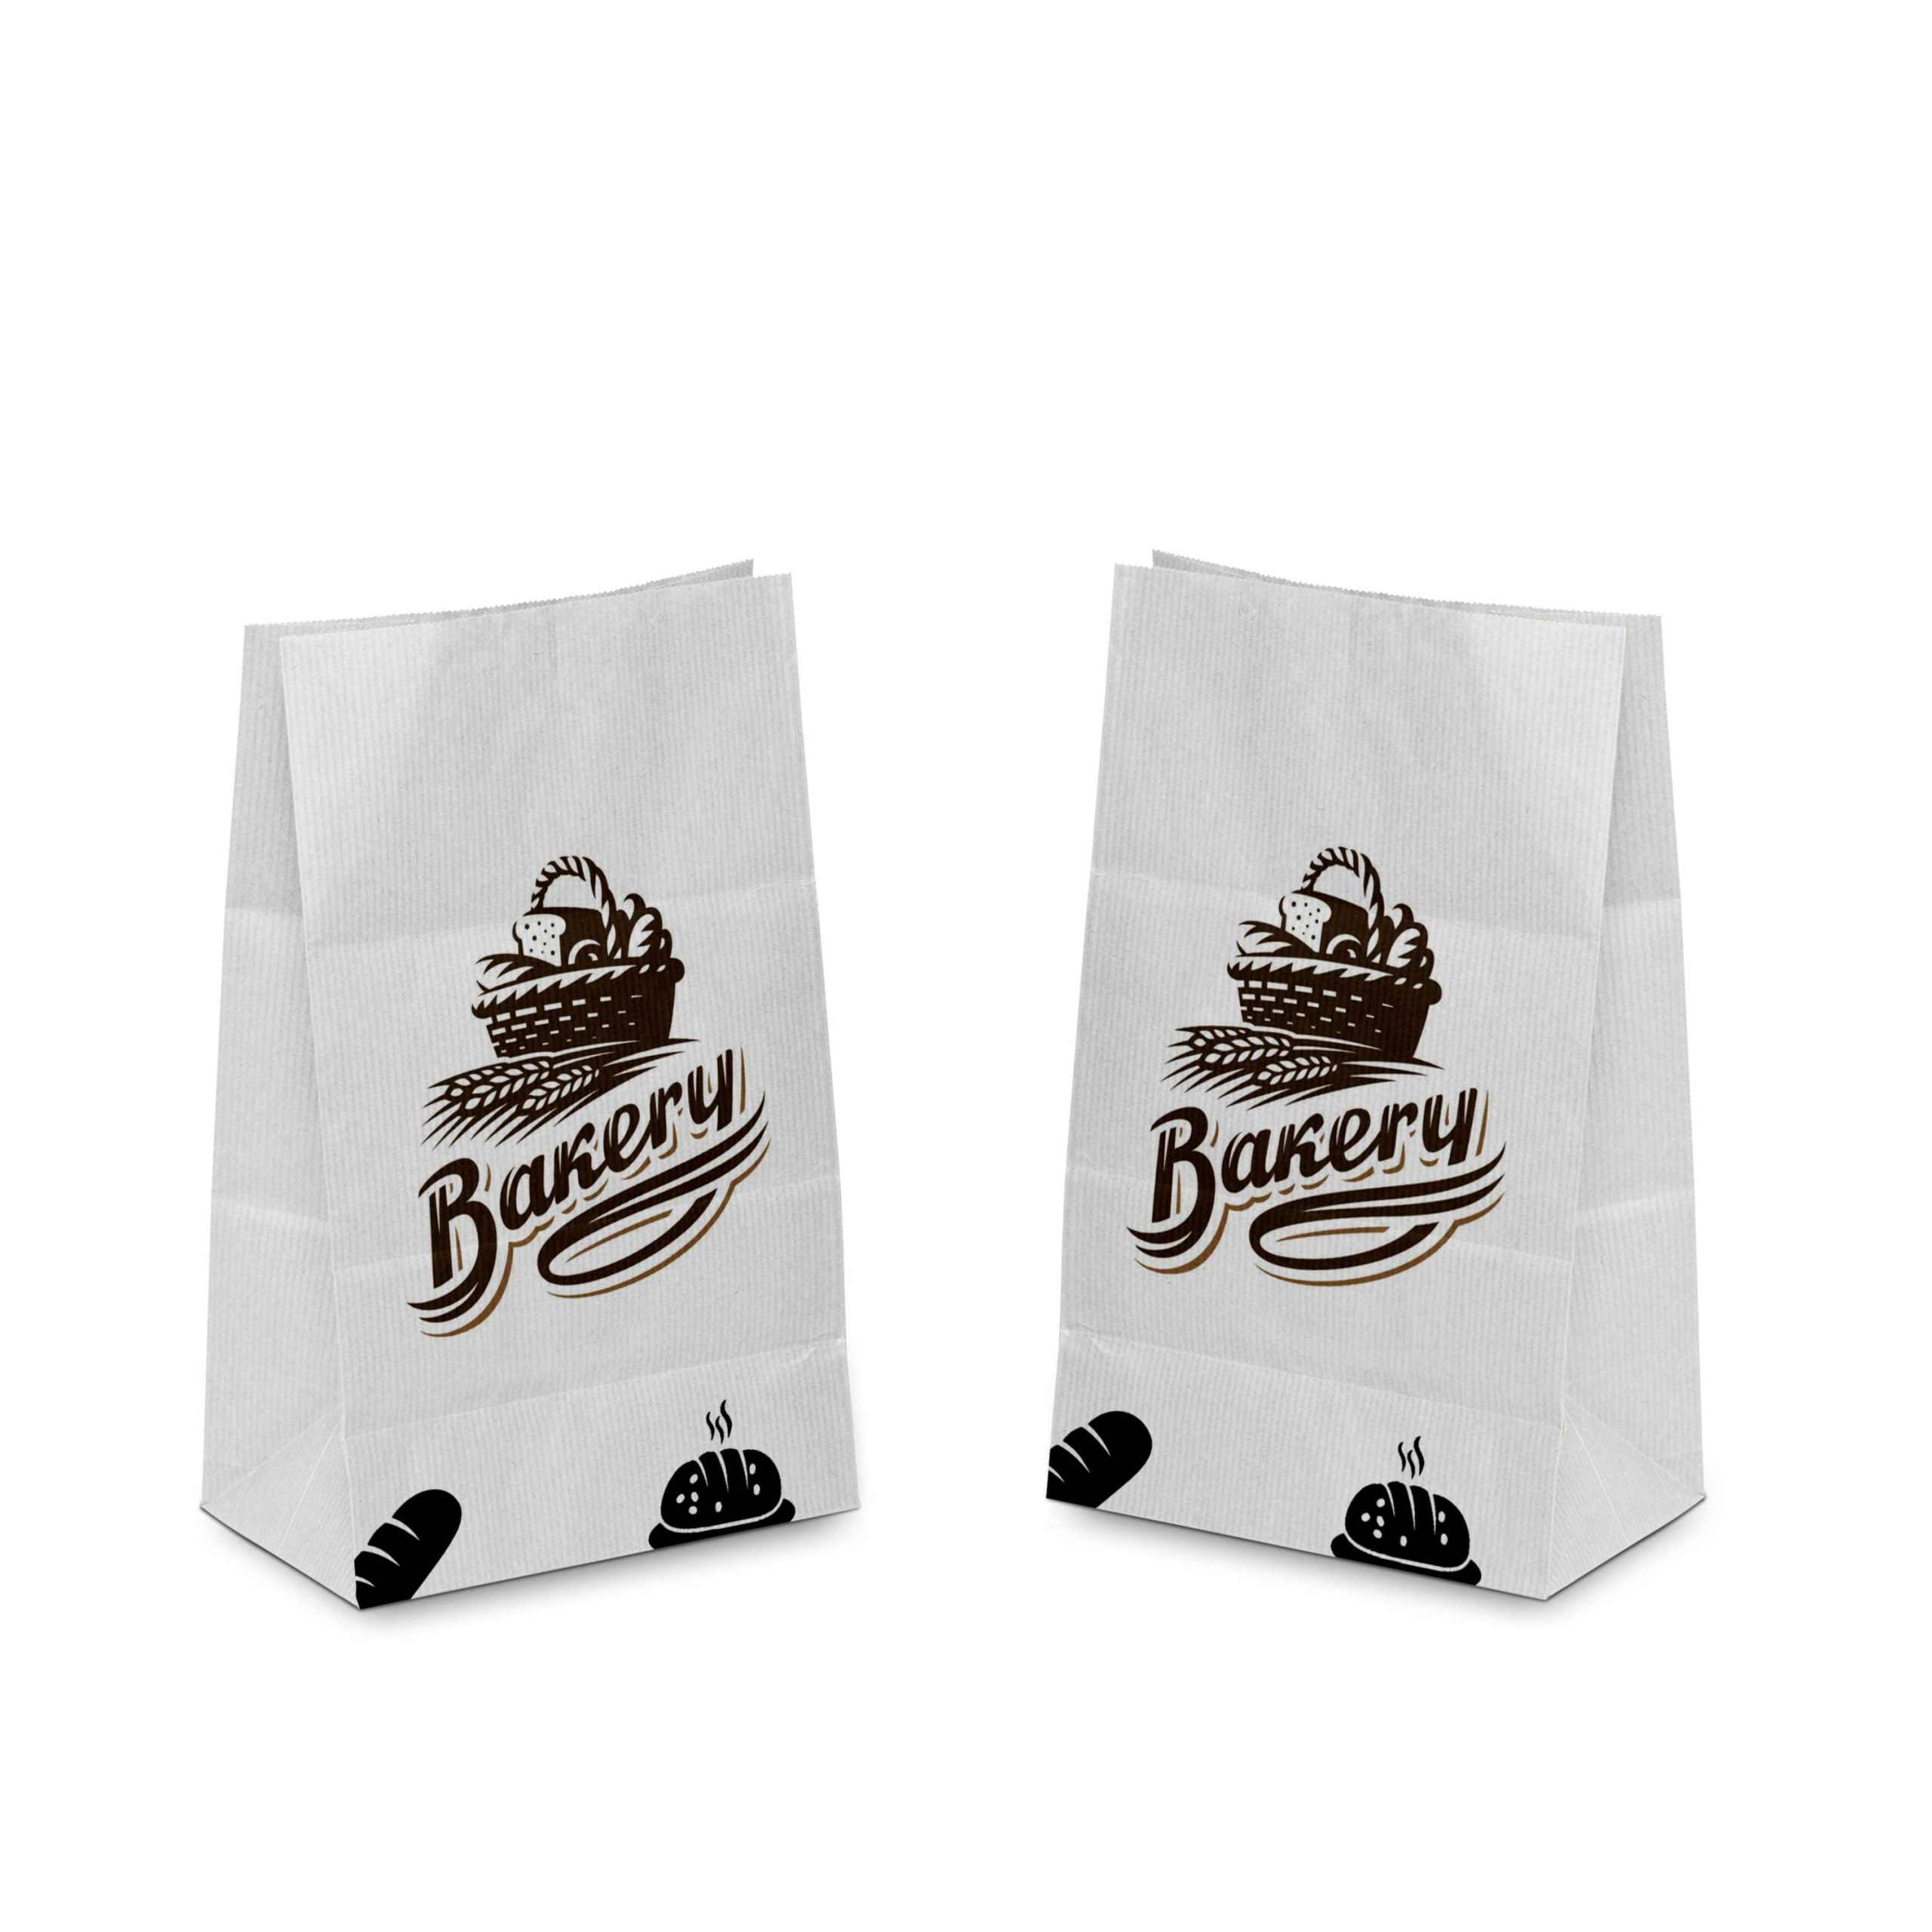 Custom White Bakery Paper Bags Design Printing